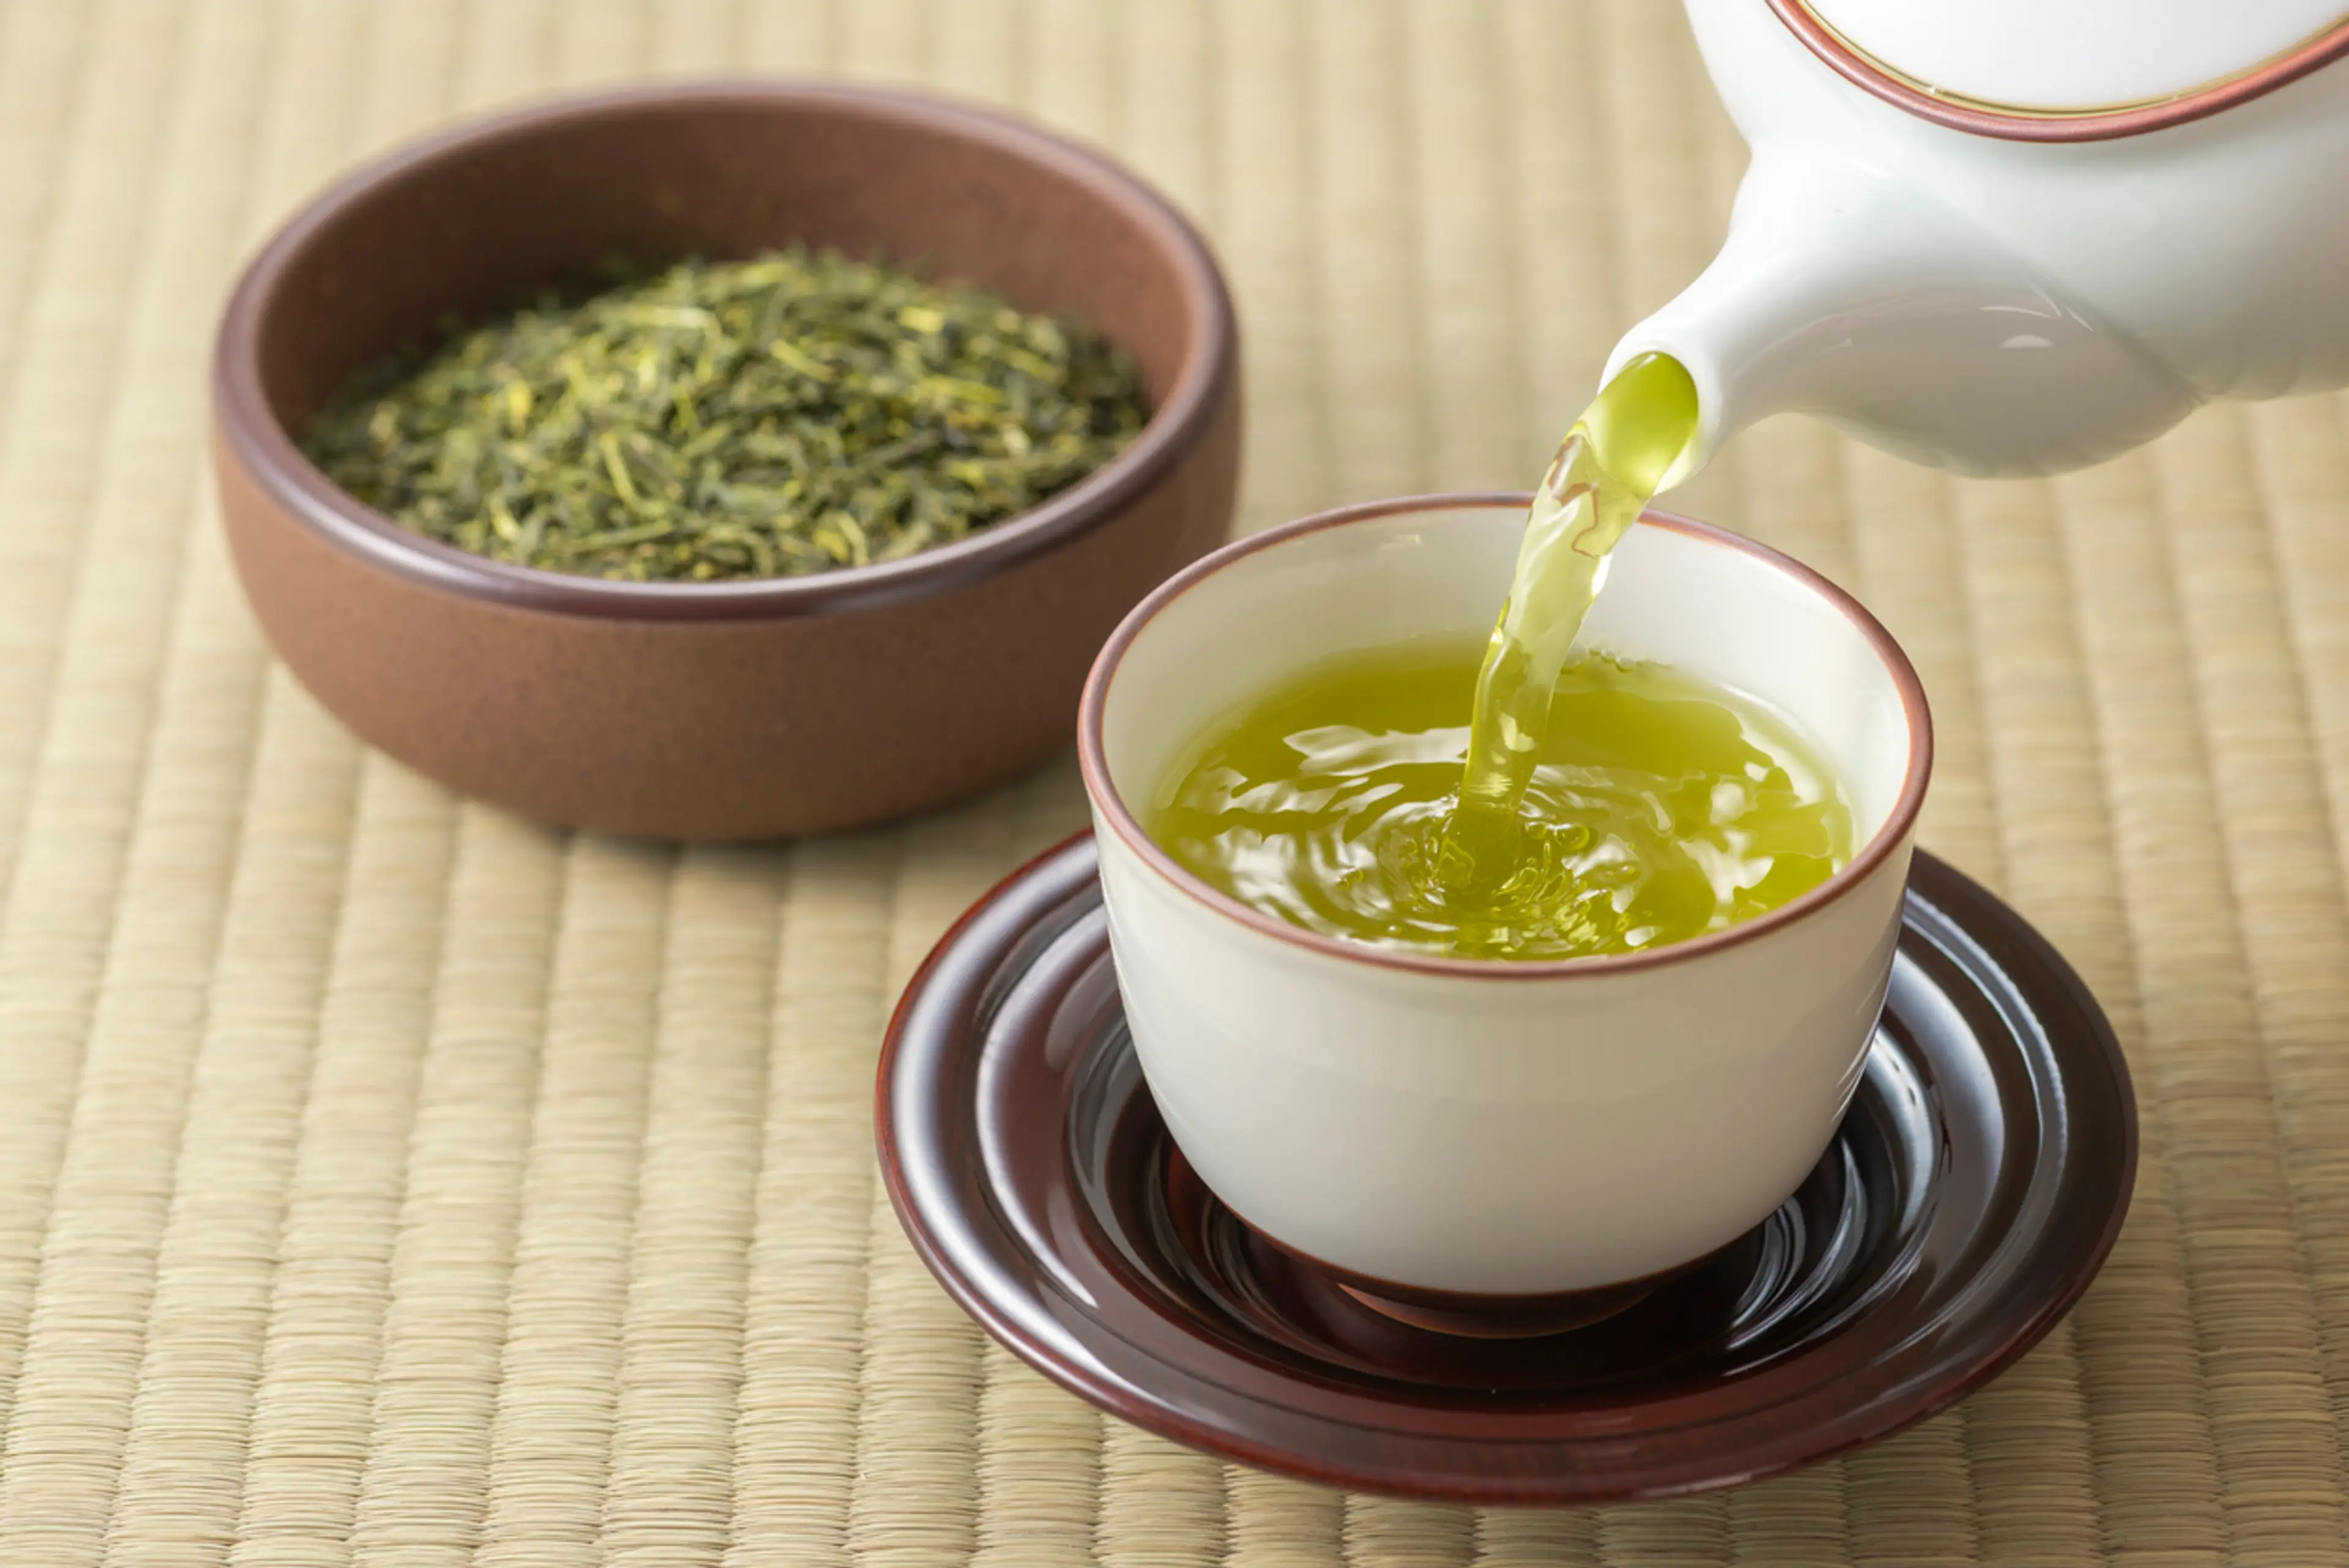 Shizuoka Green Tea